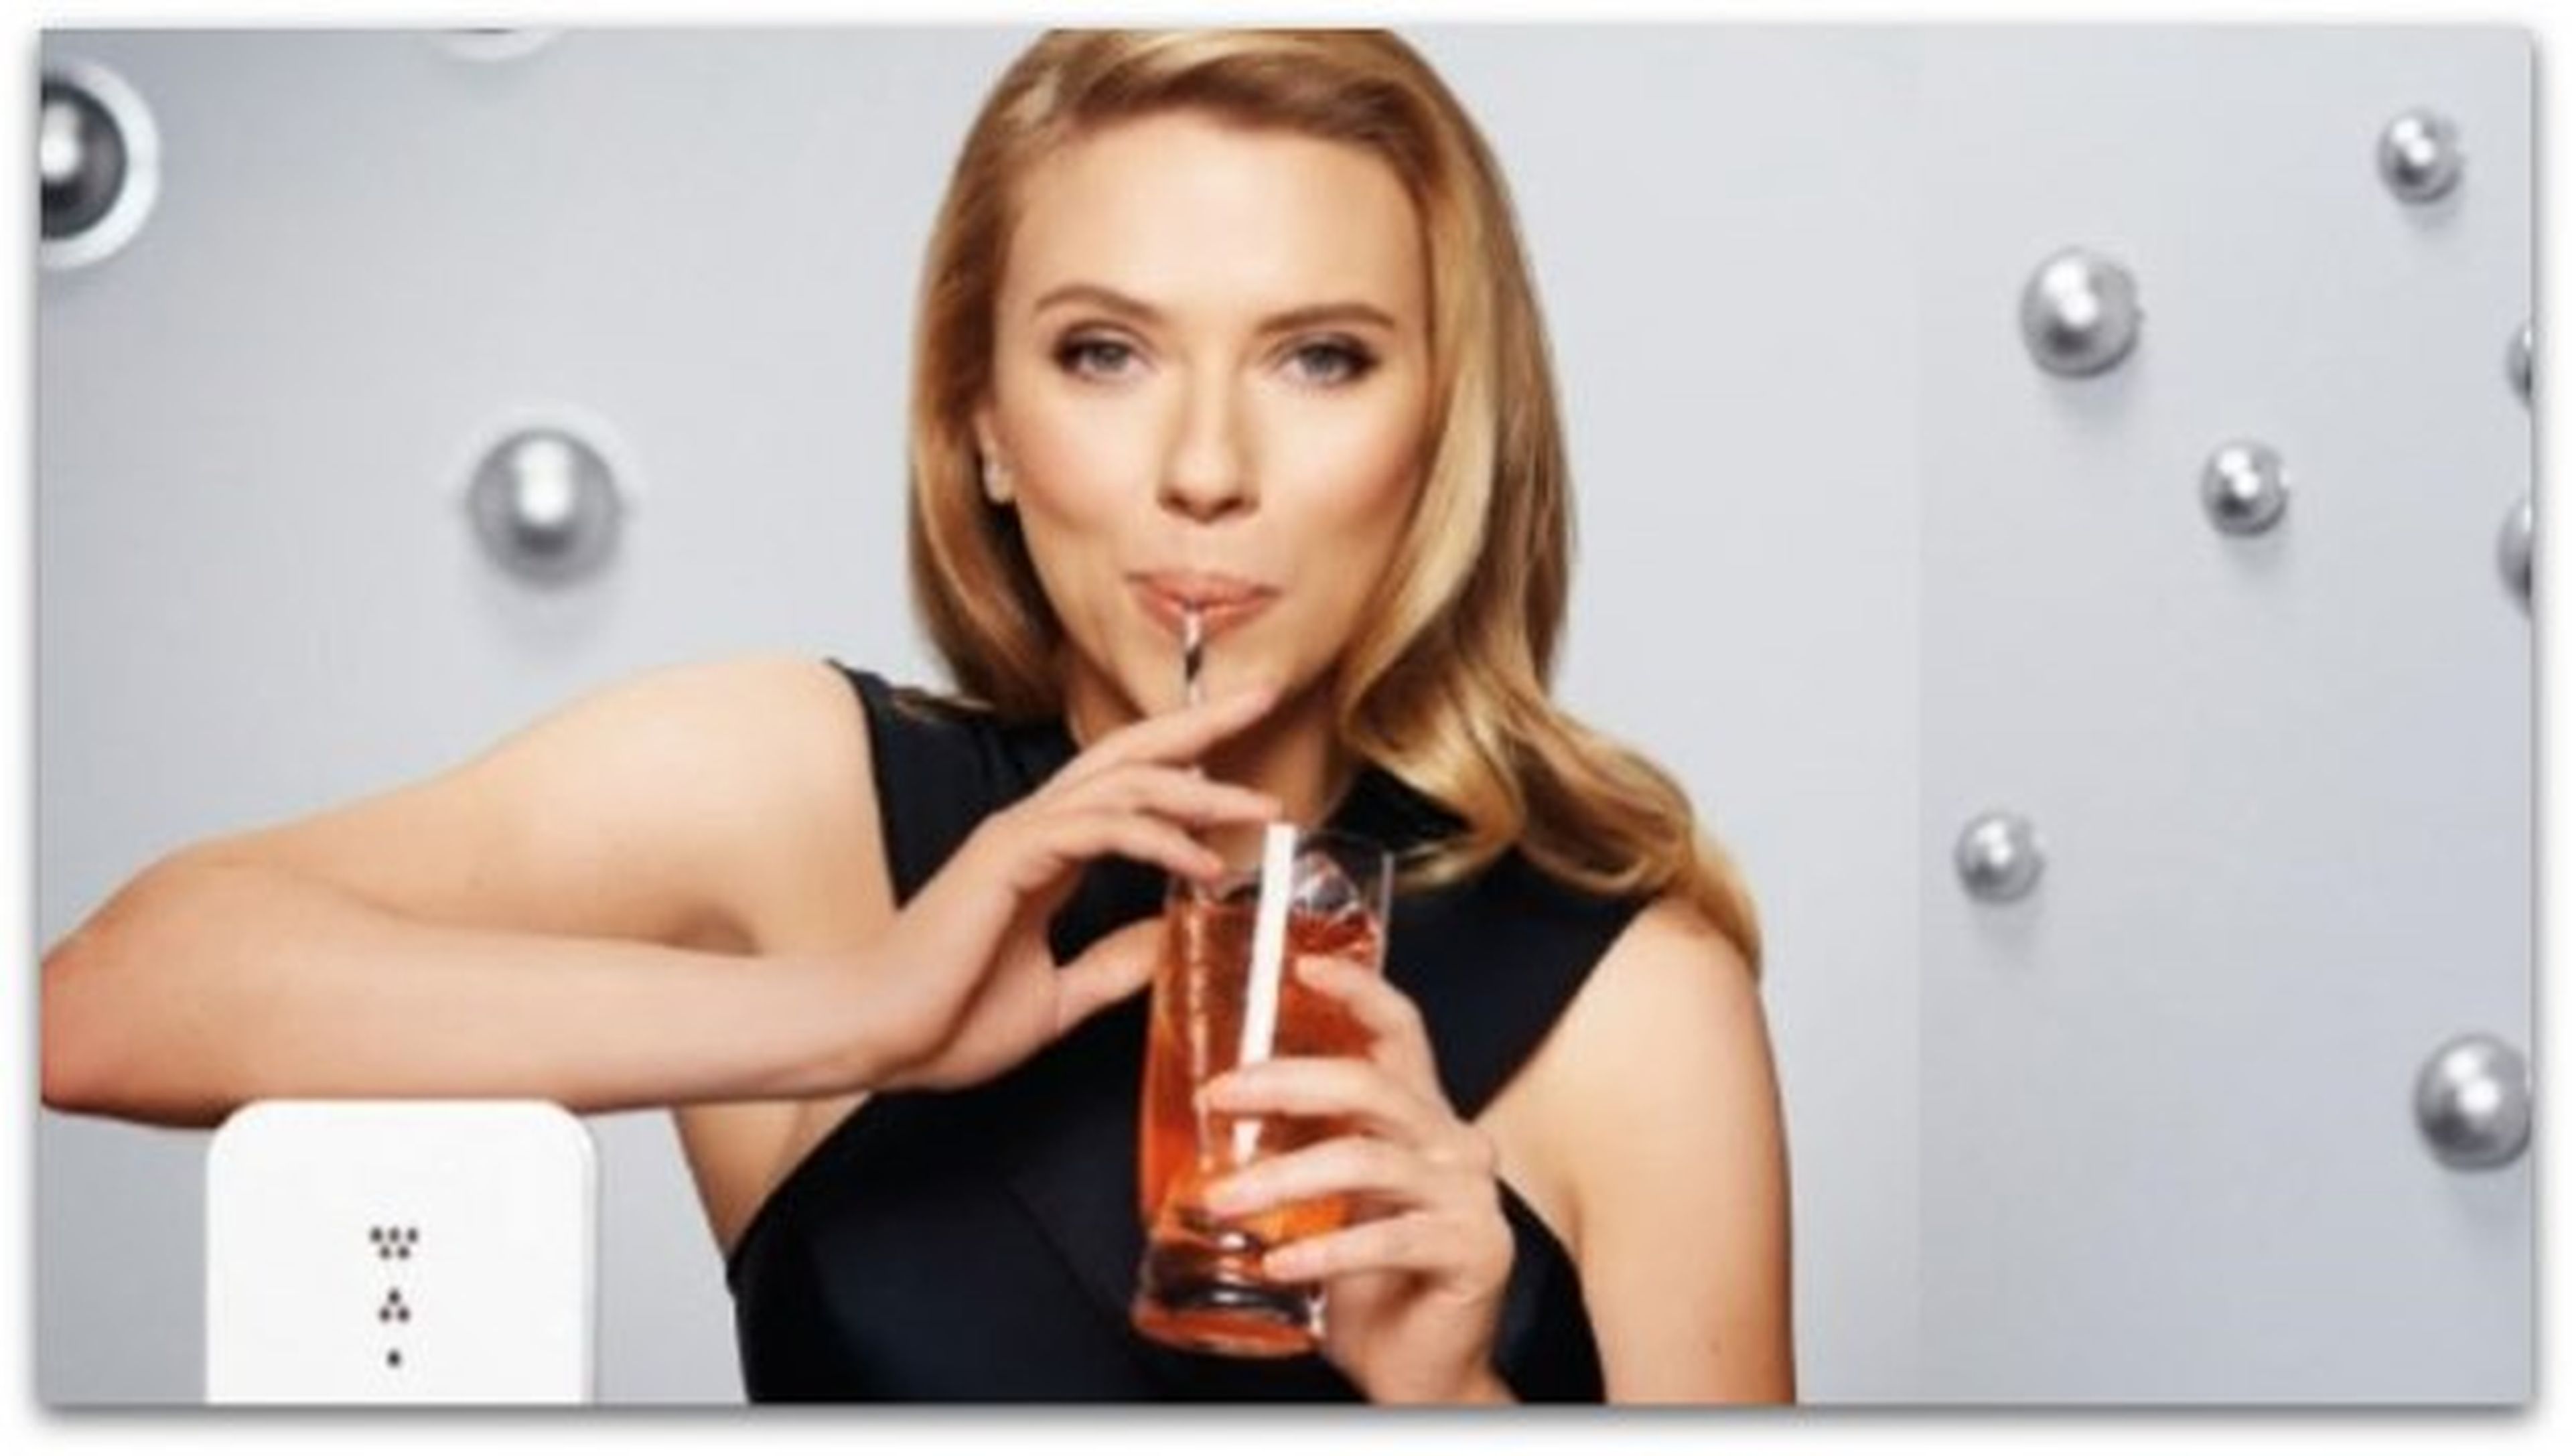 ¿Por qué se censuró a Scarlett Johansson en la Super Bowl?